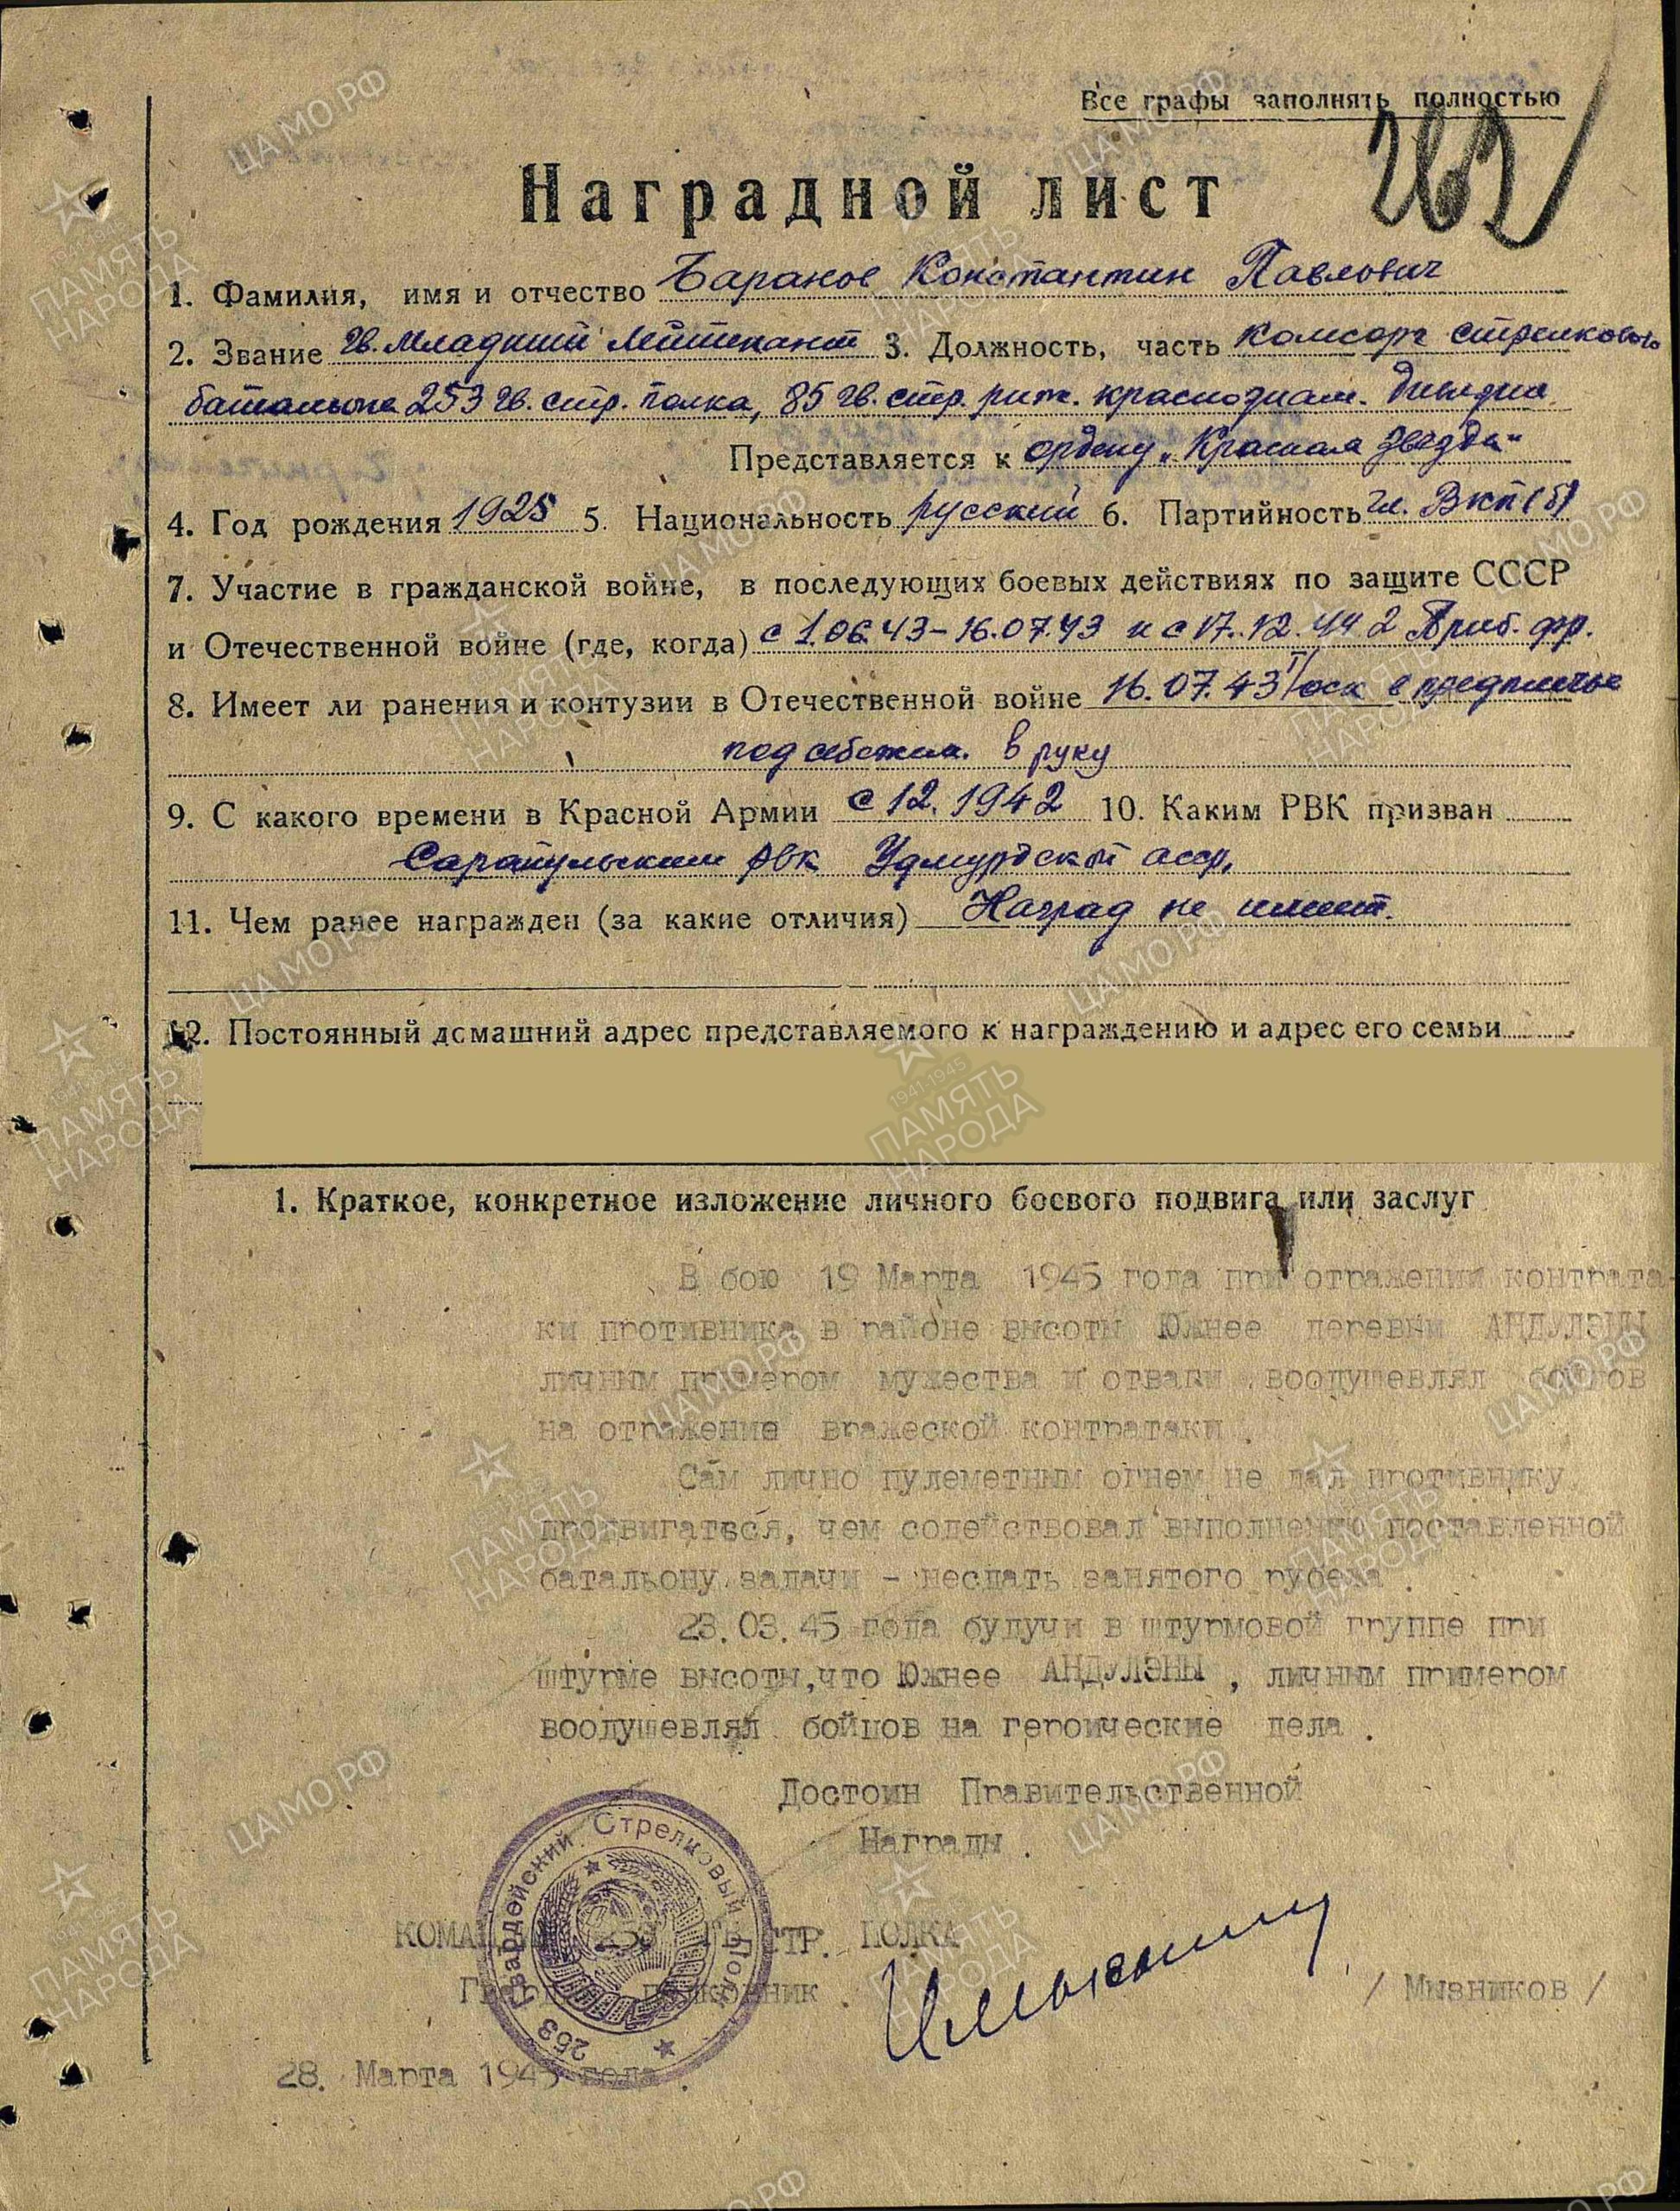 Наградной лист. Орден Красной Звезды 28.03.1945 г.